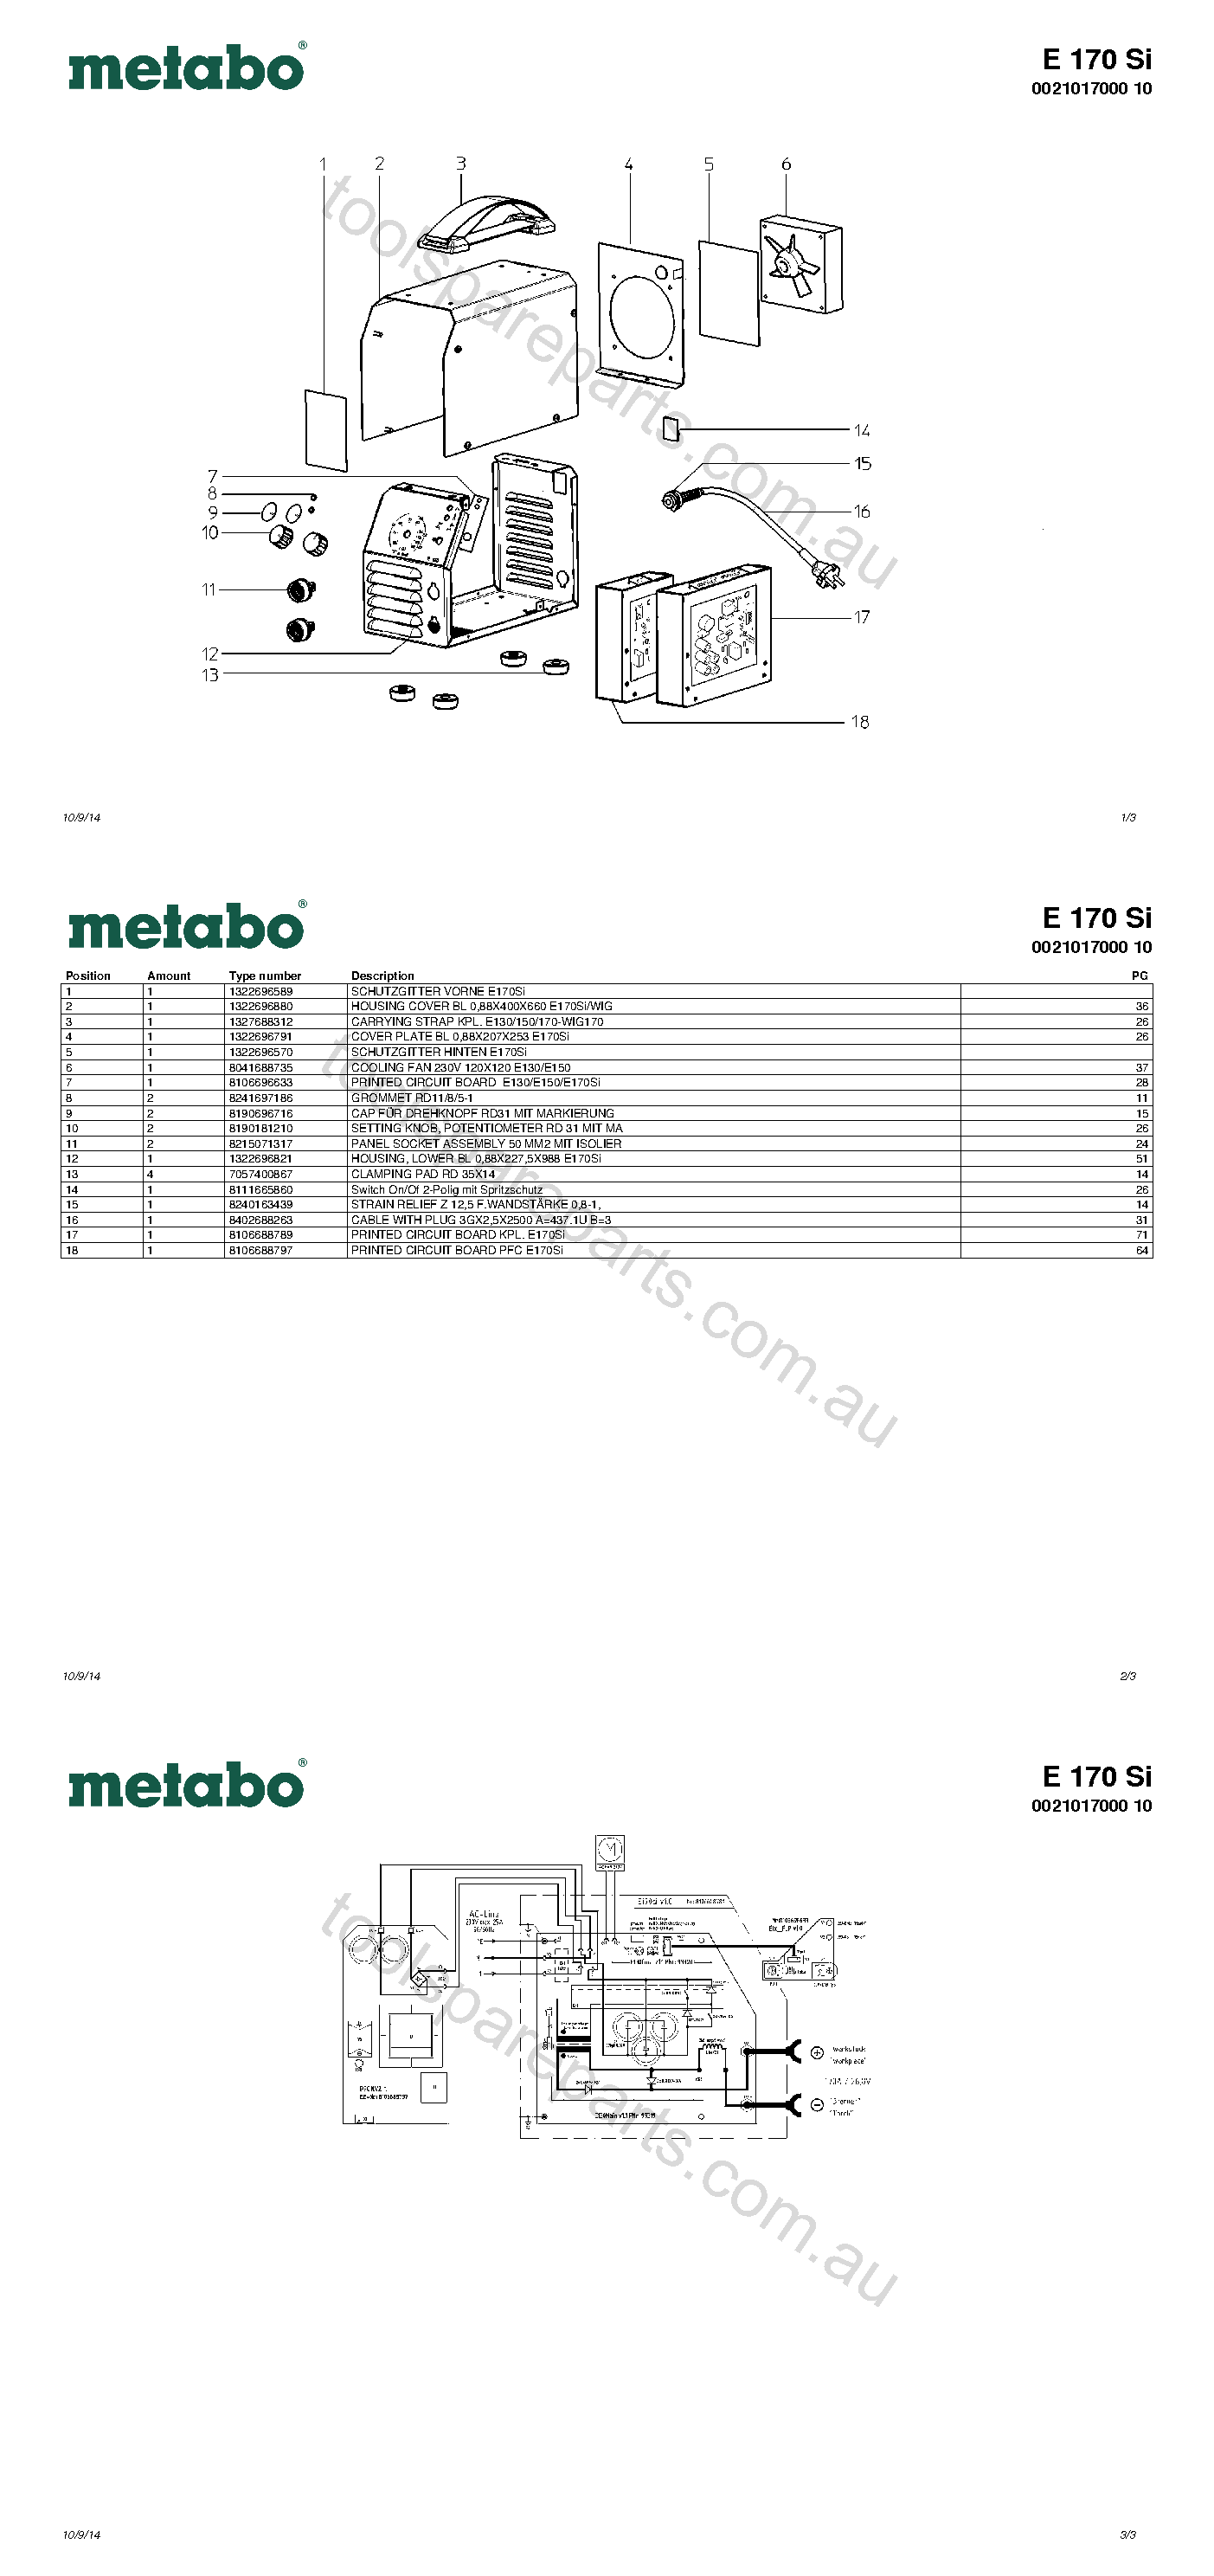 Metabo E 170 Si 0021017000 10  Diagram 1